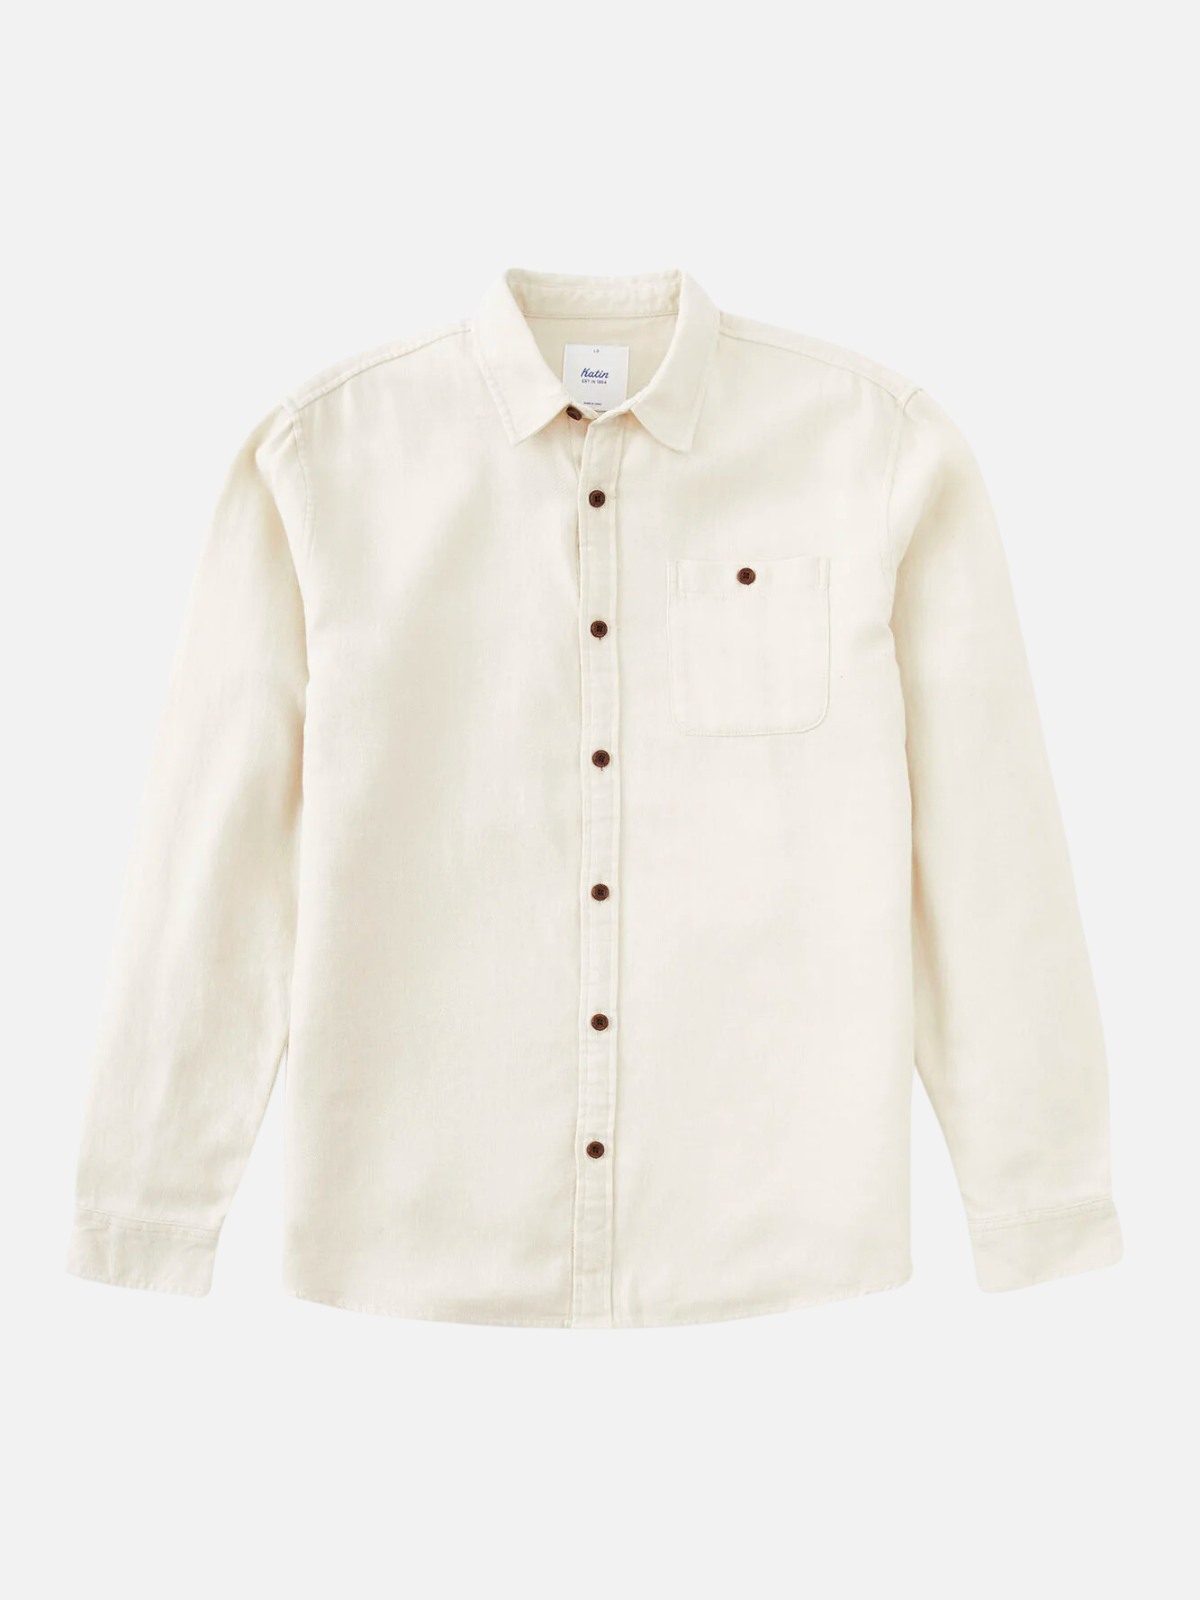 katin twiller flannel vintage white 100% cotton button down shirt kempt athens ga georgia men's clothing store